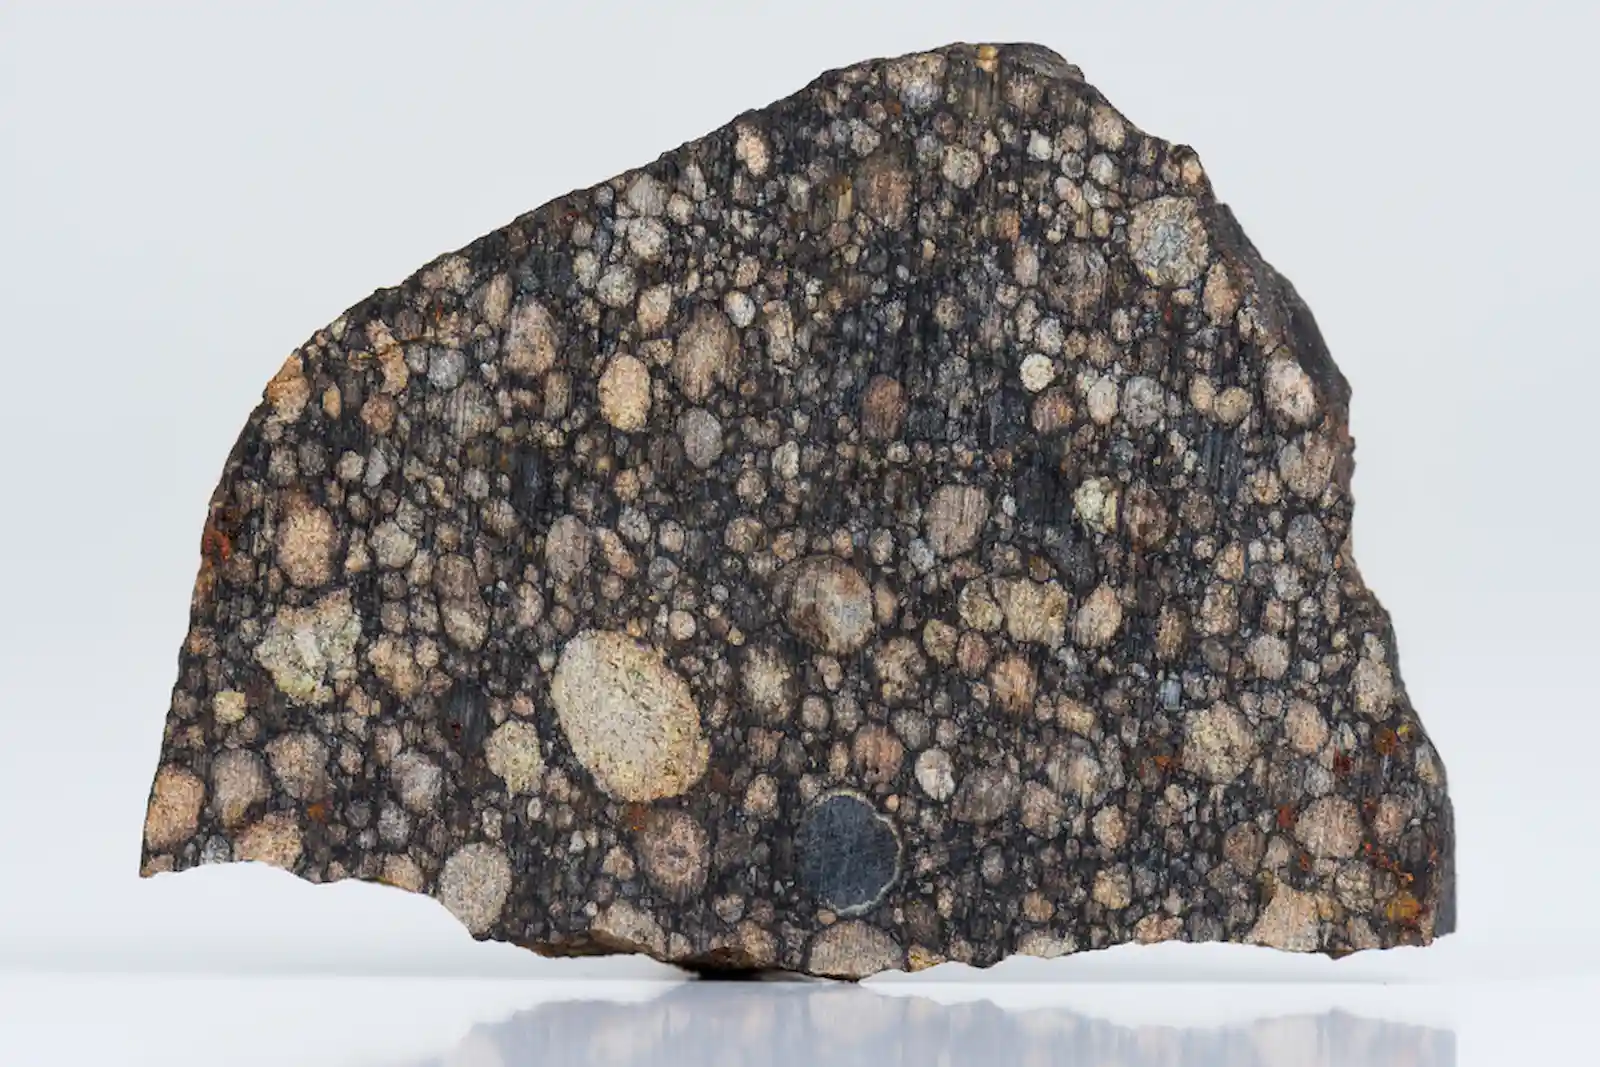 chondrule on chondrite meteorite